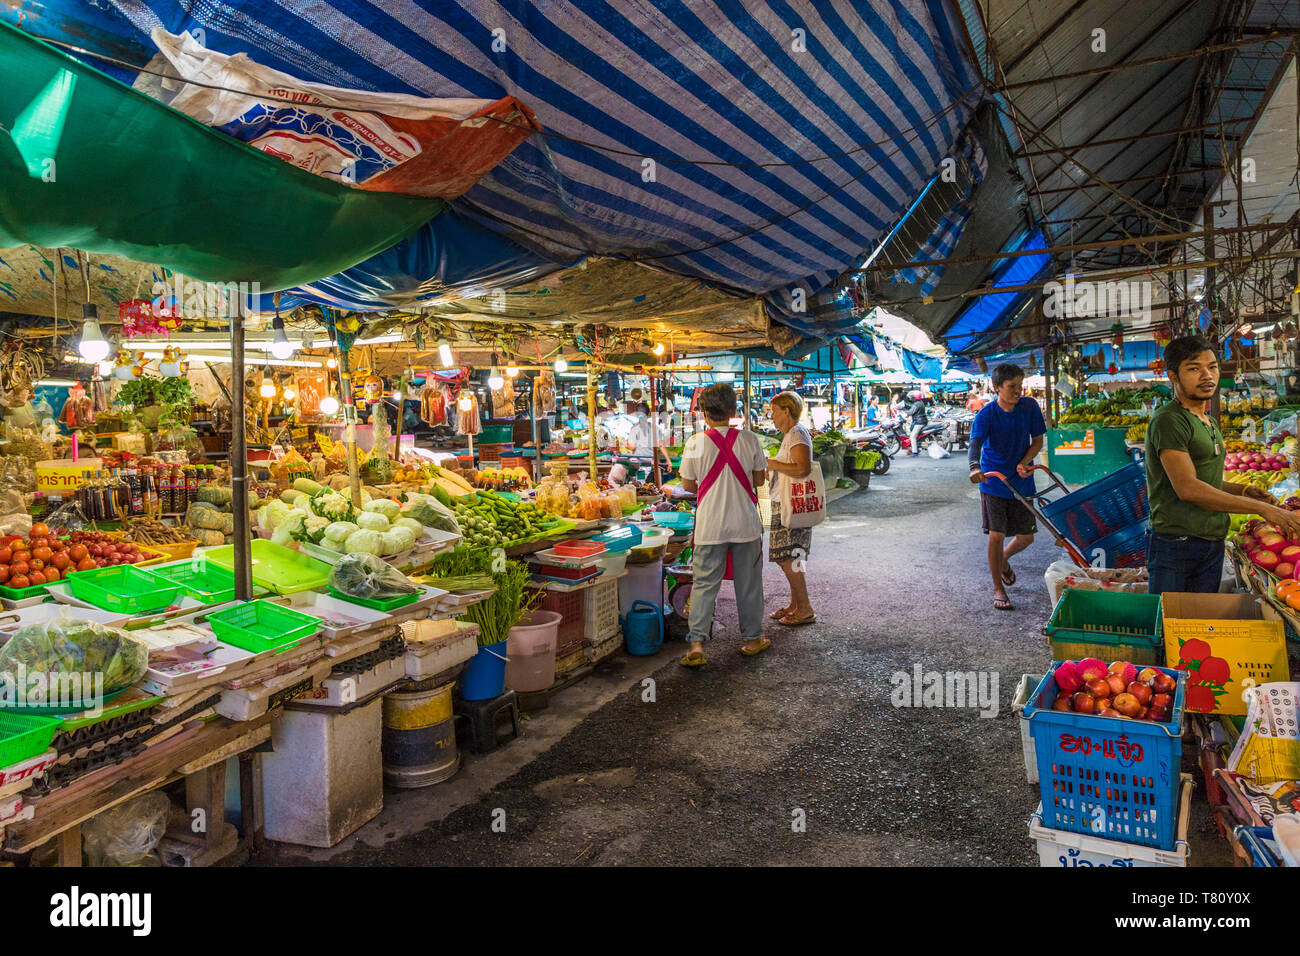 Les étals du marché de la réception ouverte 24h marché local dans la ville de Phuket, Phuket, Thaïlande, Asie du Sud, Asie Banque D'Images